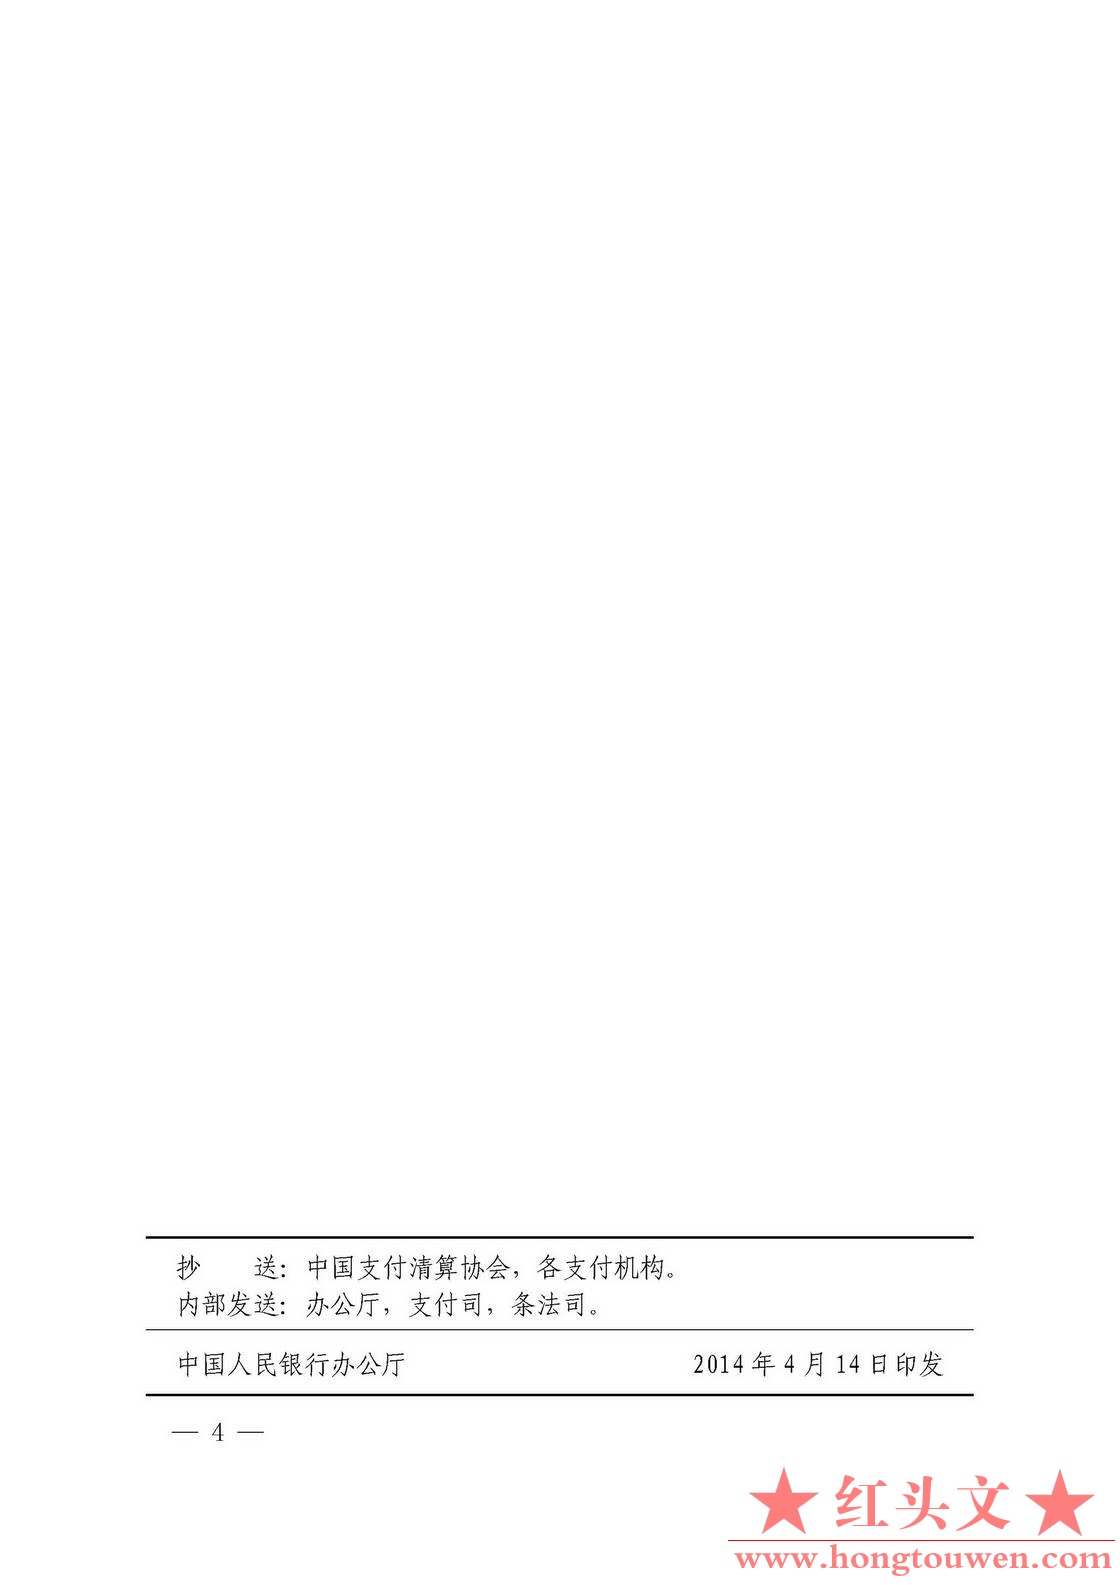 银发[2014]106号-中国人民银行关于支付结算执法检查行政处罚有关问题的通知_页面_4.jp.jpg